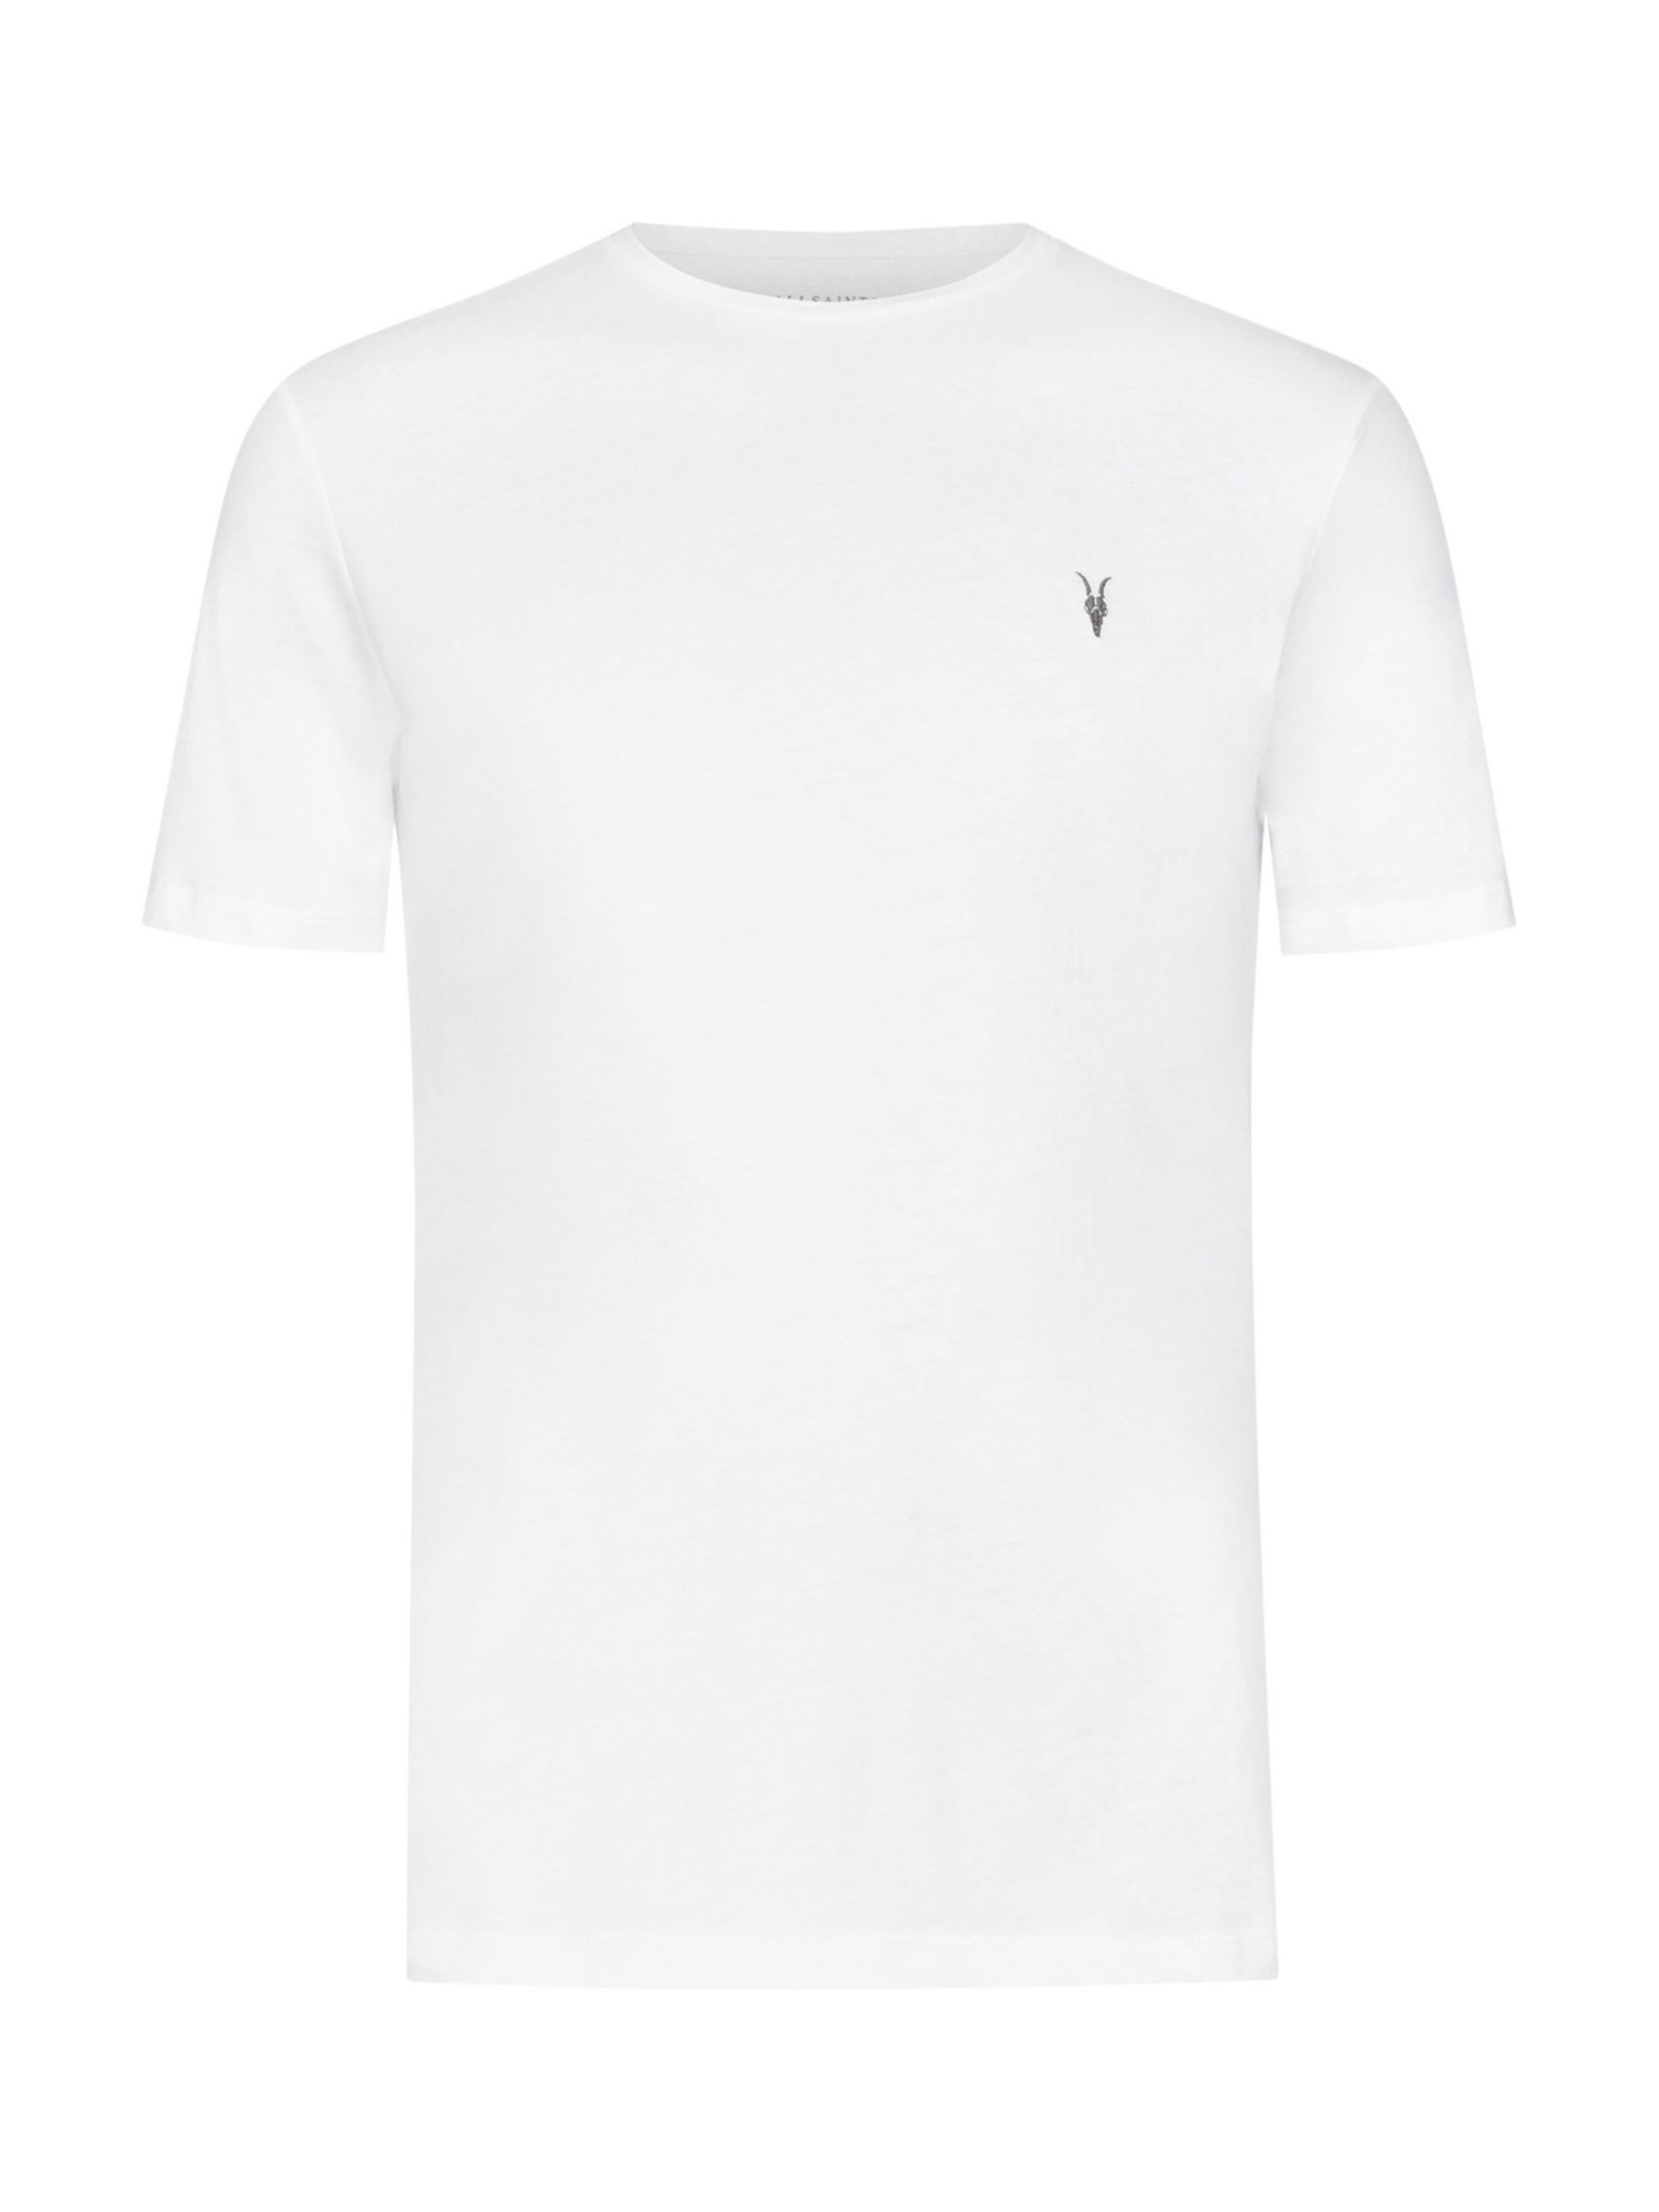 Buy AllSaints Brace Tonic Crew Neck T-Shirt Online at johnlewis.com